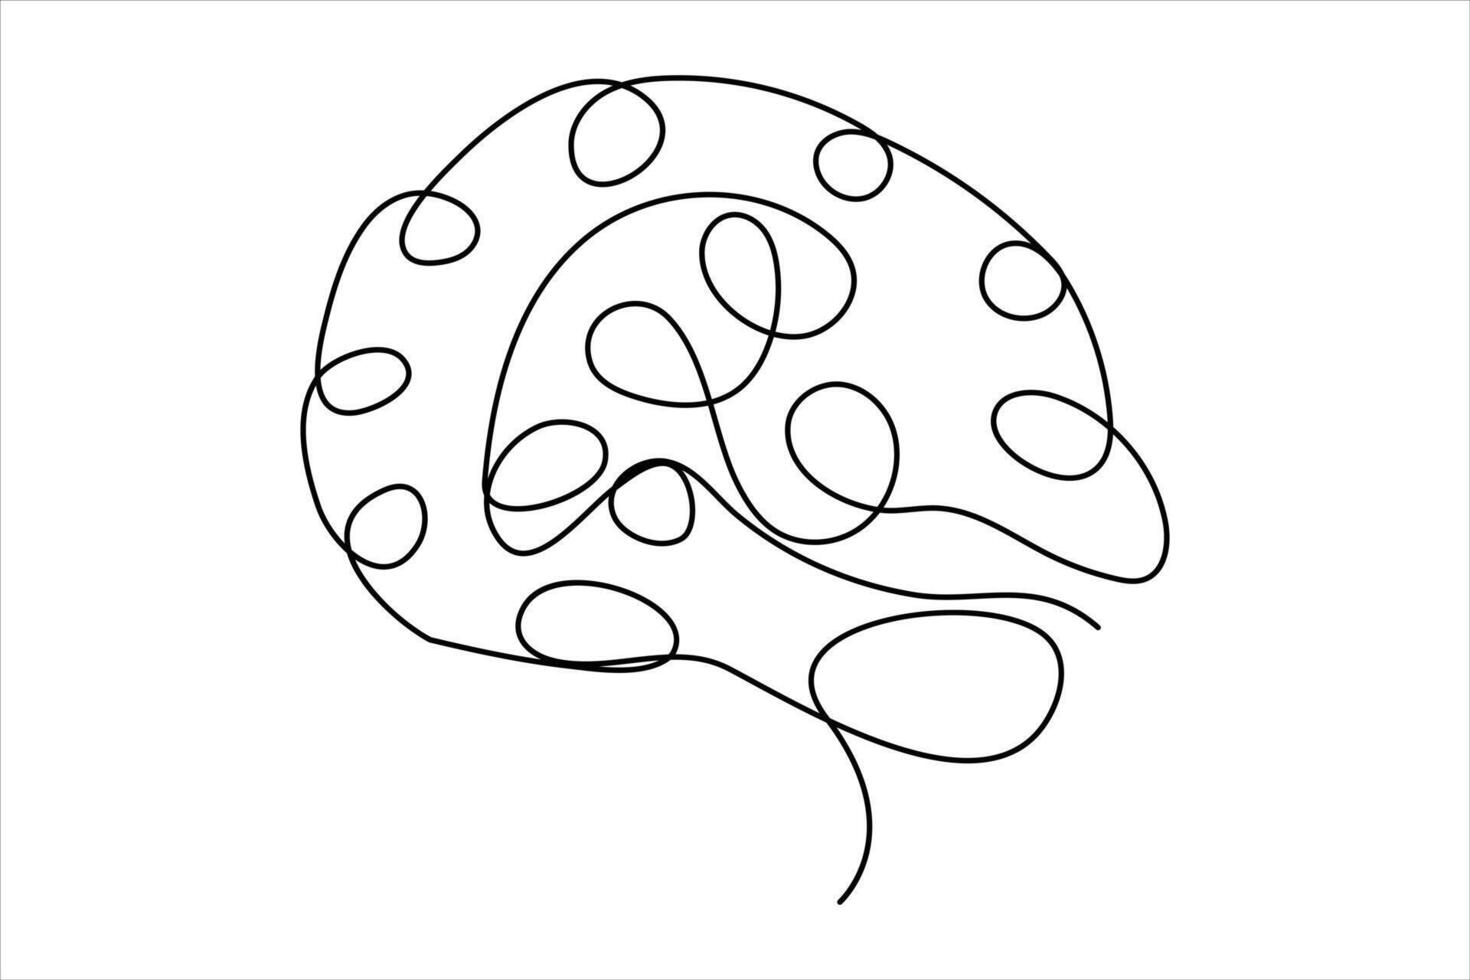 doorlopend een lijn tekening van menselijk brein. hand- getrokken minimalisme stijl. hersenen lijn kunst vector illustratie